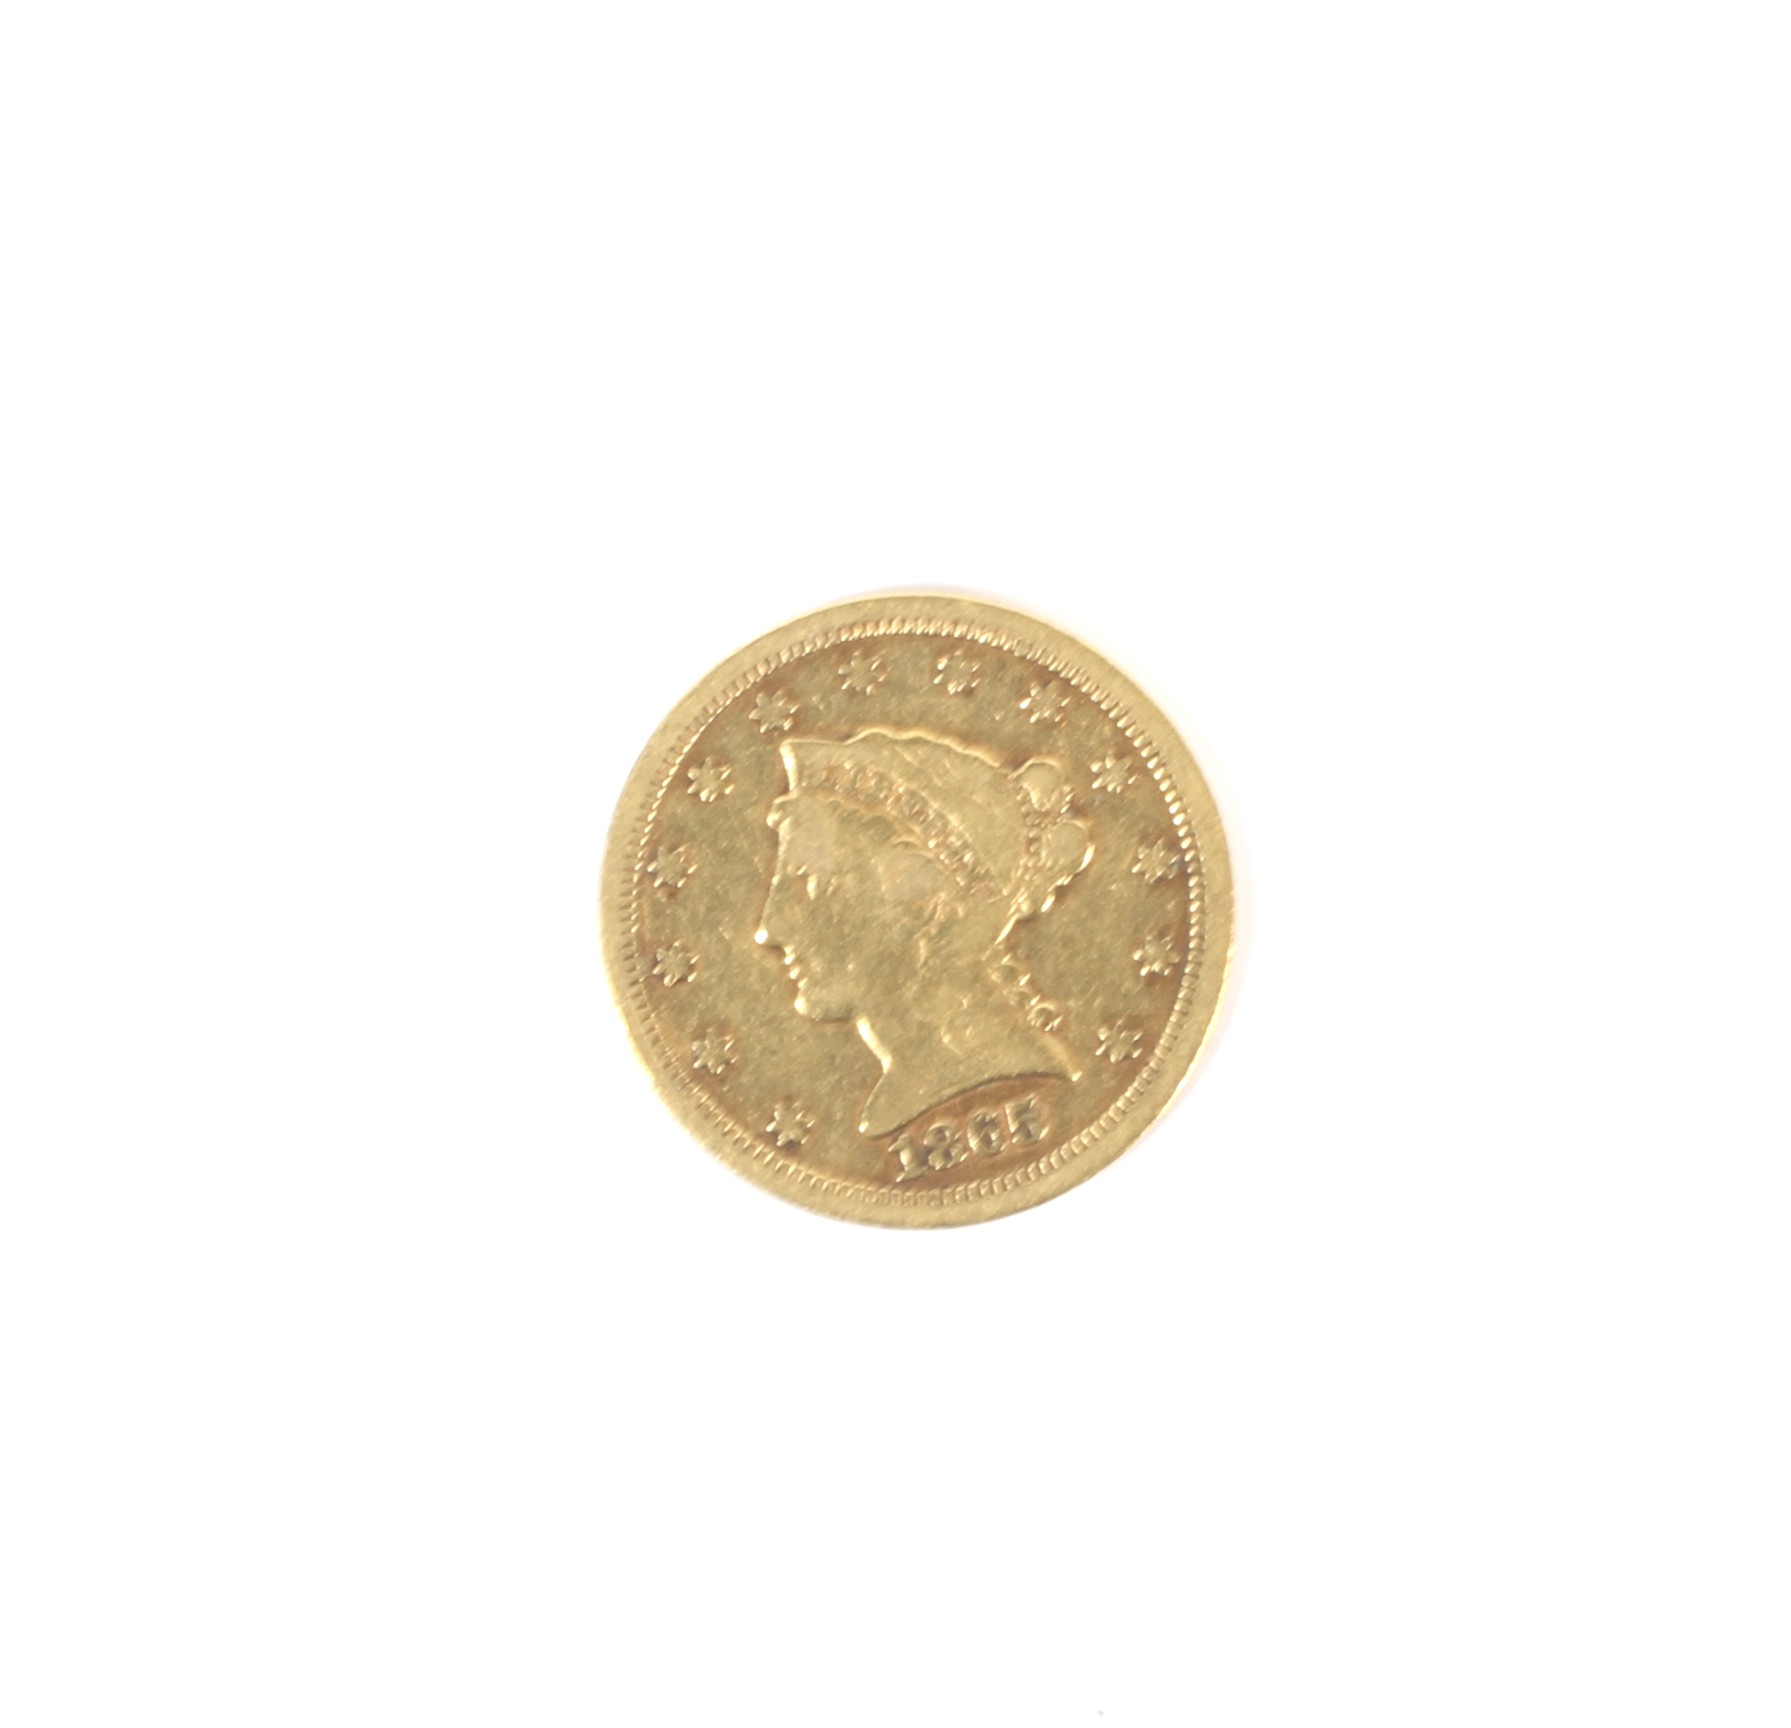 A rare USA 1865 (S) gold 2 and half dollar coin,